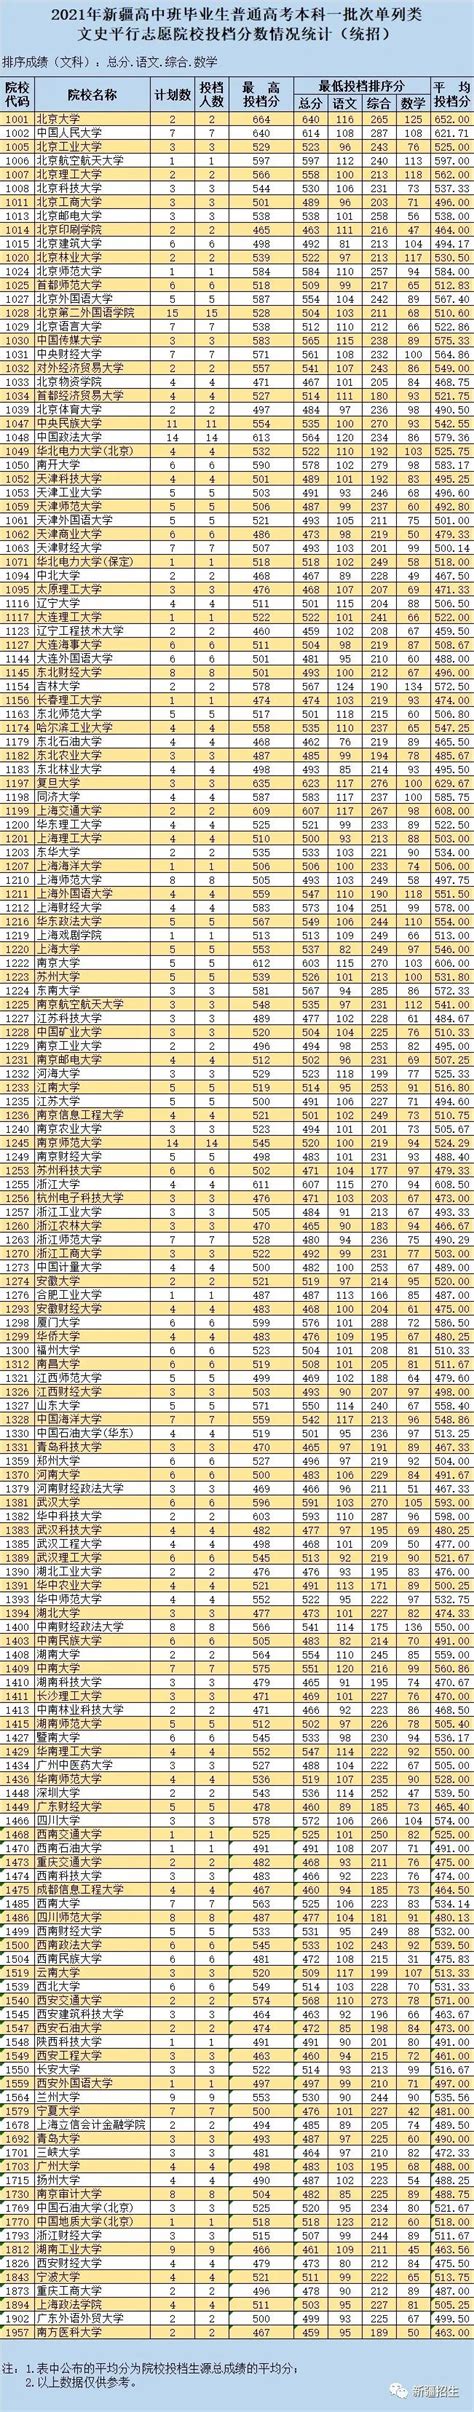 新疆内高班2020高考单列类提前批北京等12省生源统计一览- 本地宝